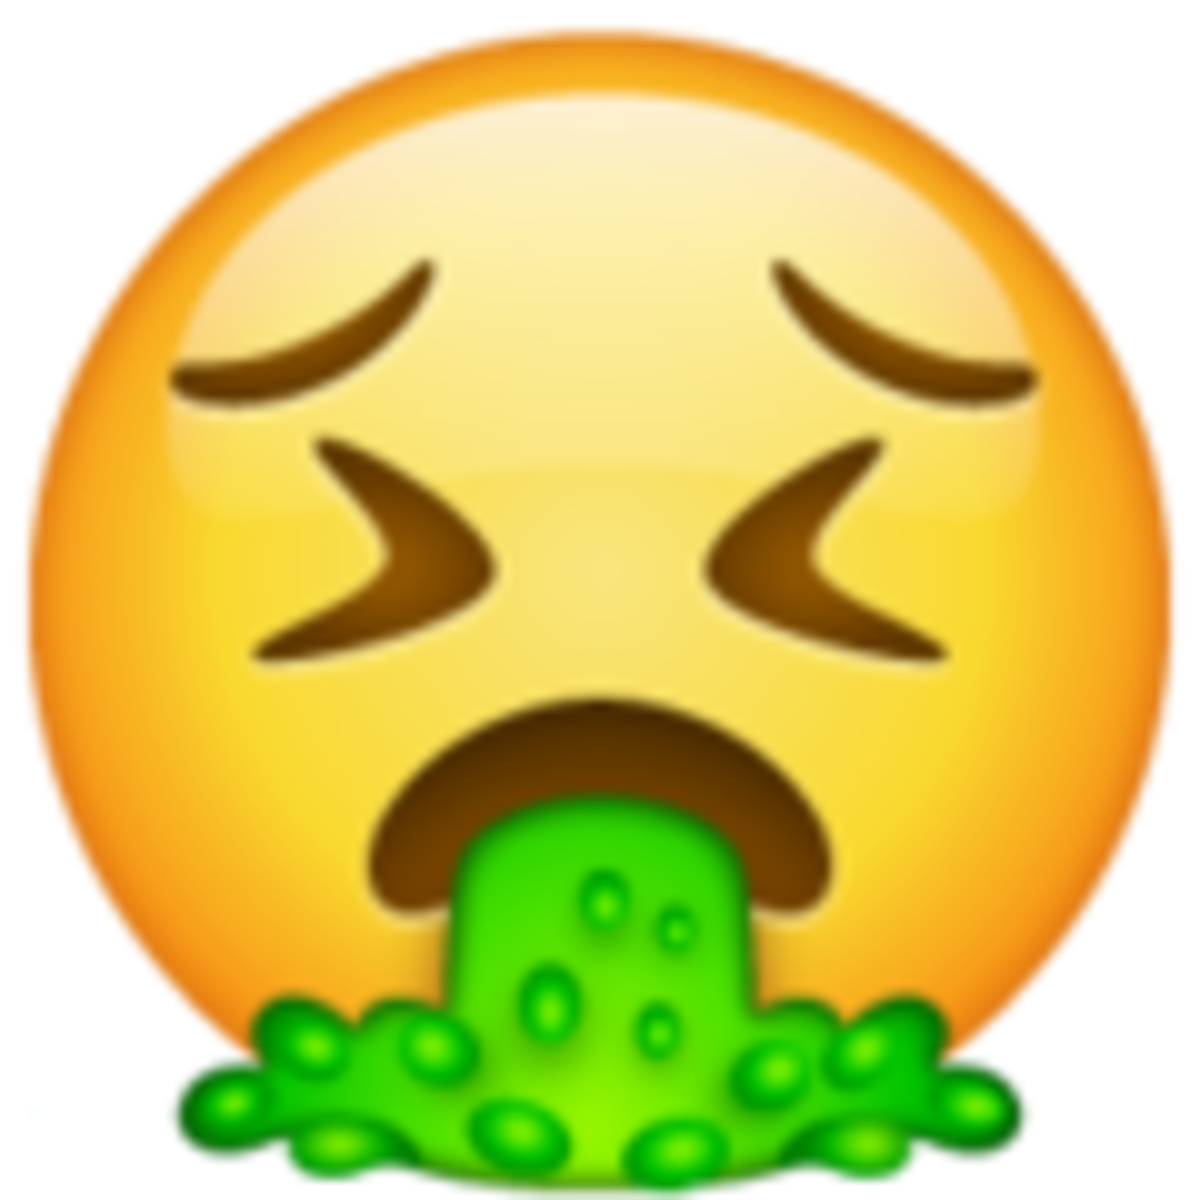 Emoji 1f92e de cara vomitando. png